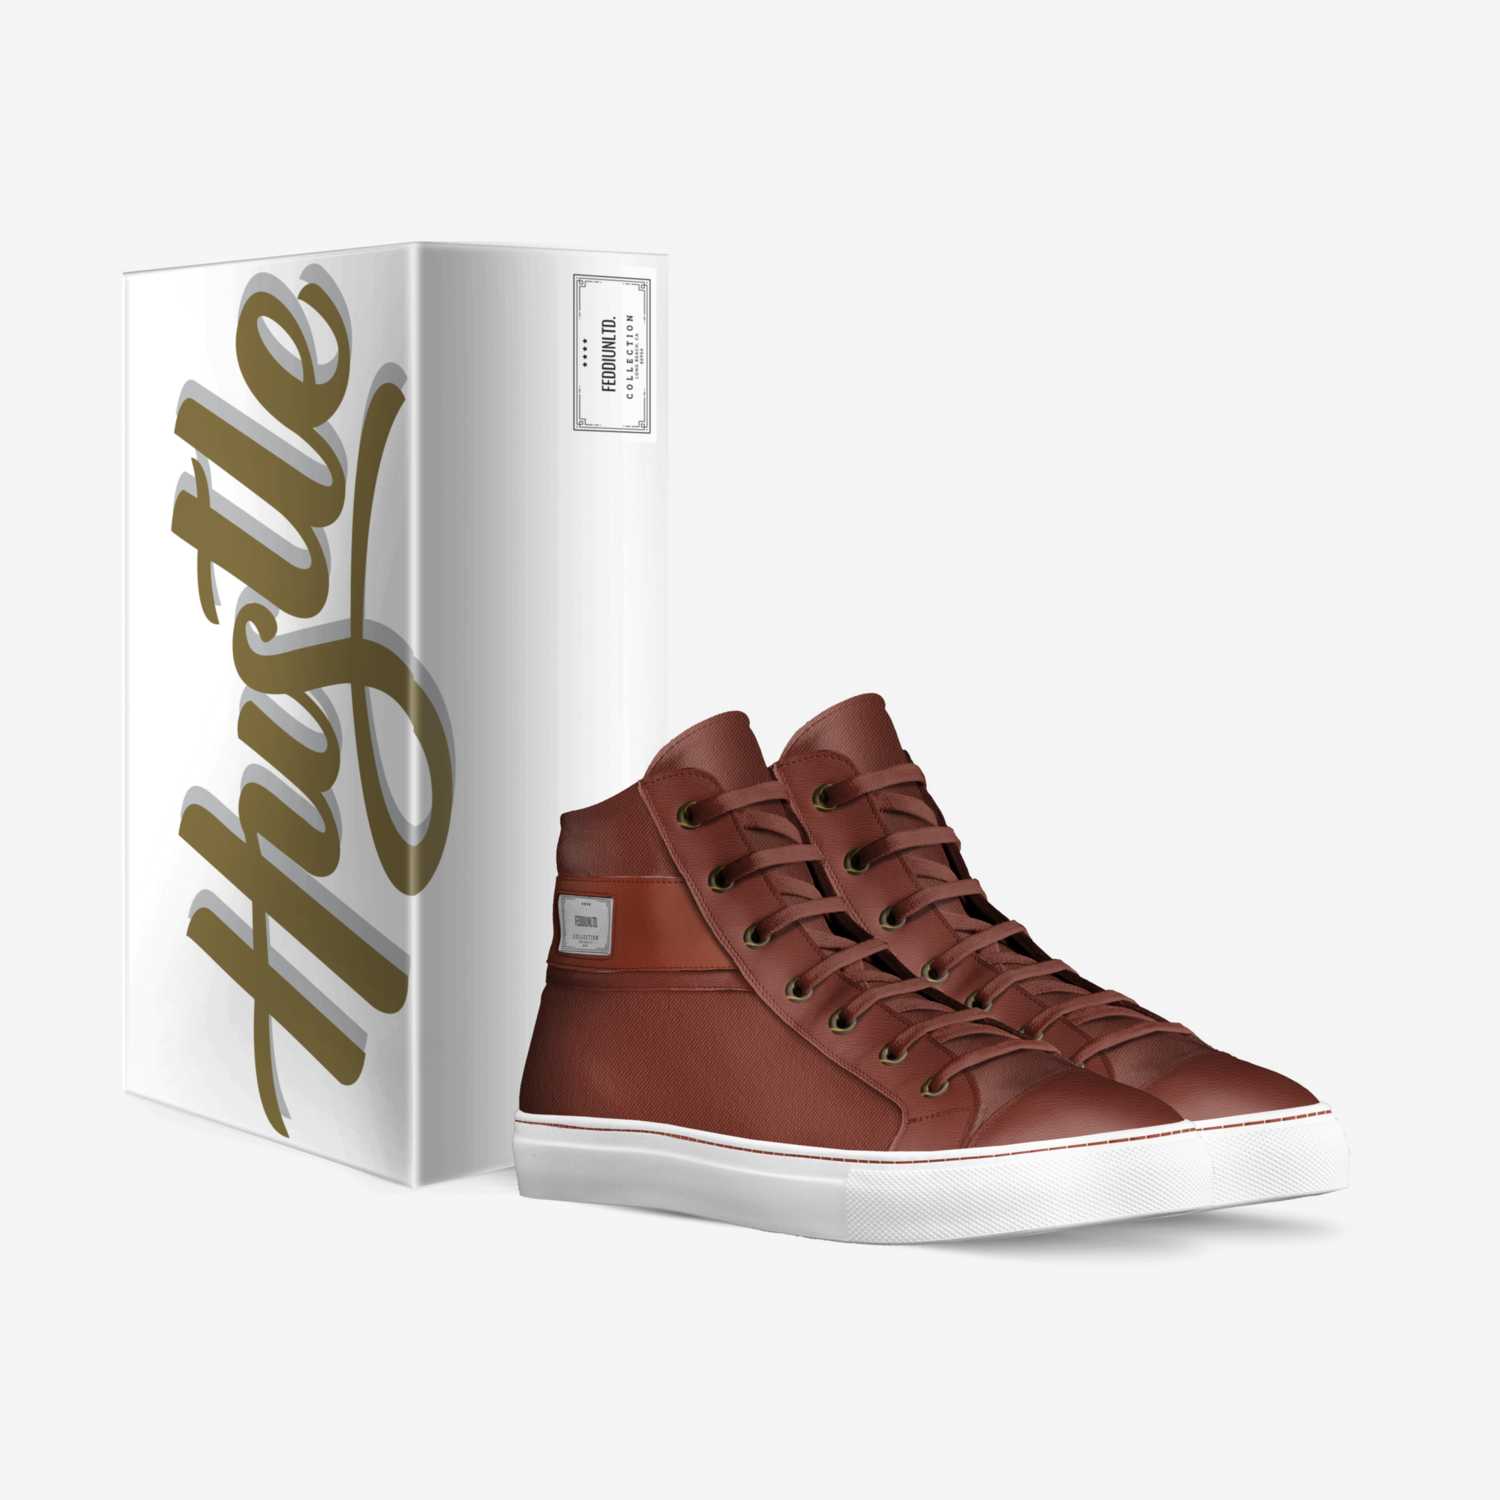 FeddiUnltd. custom made in Italy shoes by Lloyd Elliott | Box view